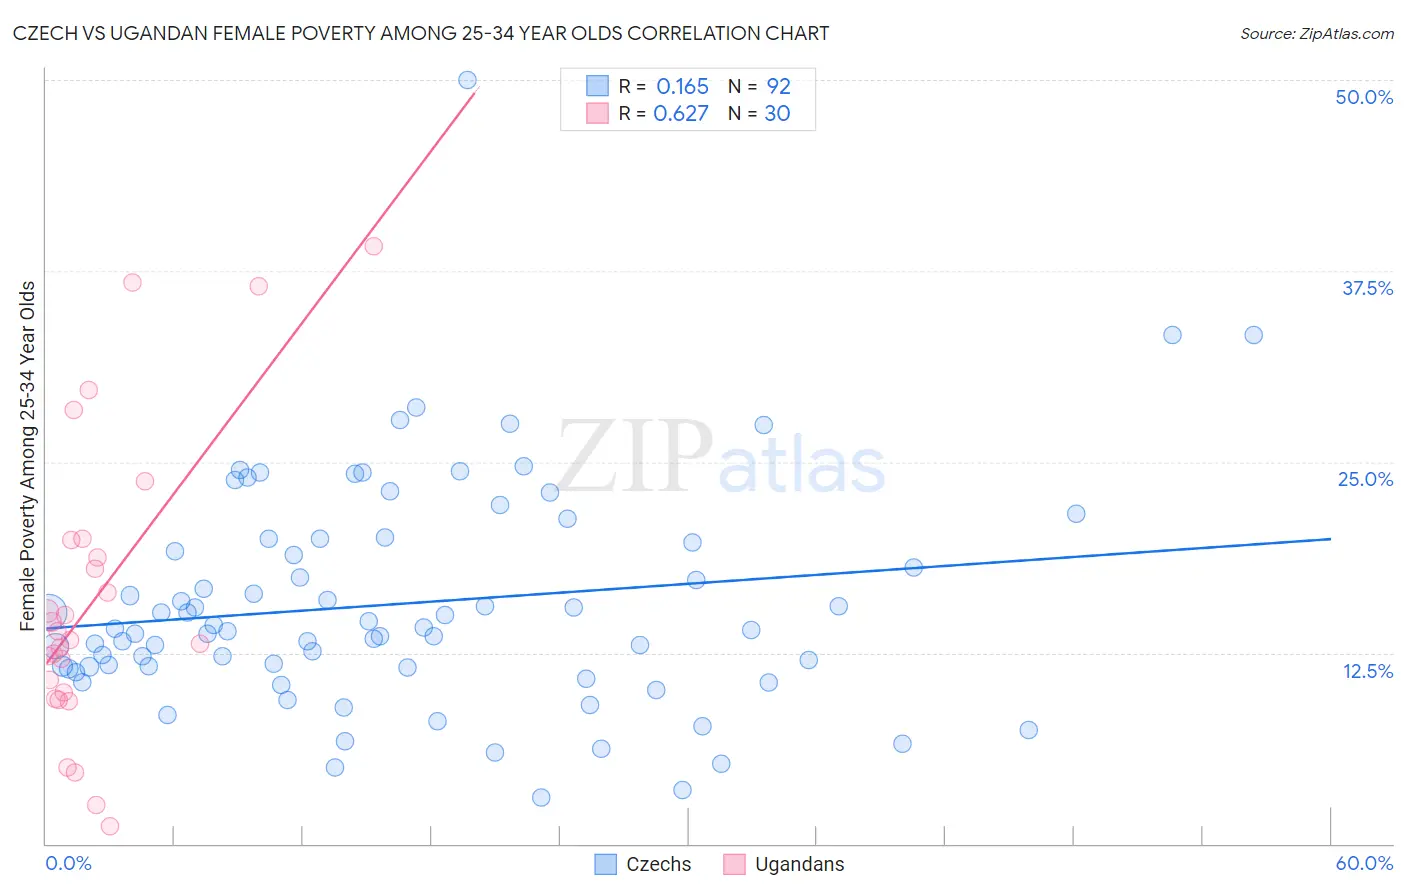 Czech vs Ugandan Female Poverty Among 25-34 Year Olds